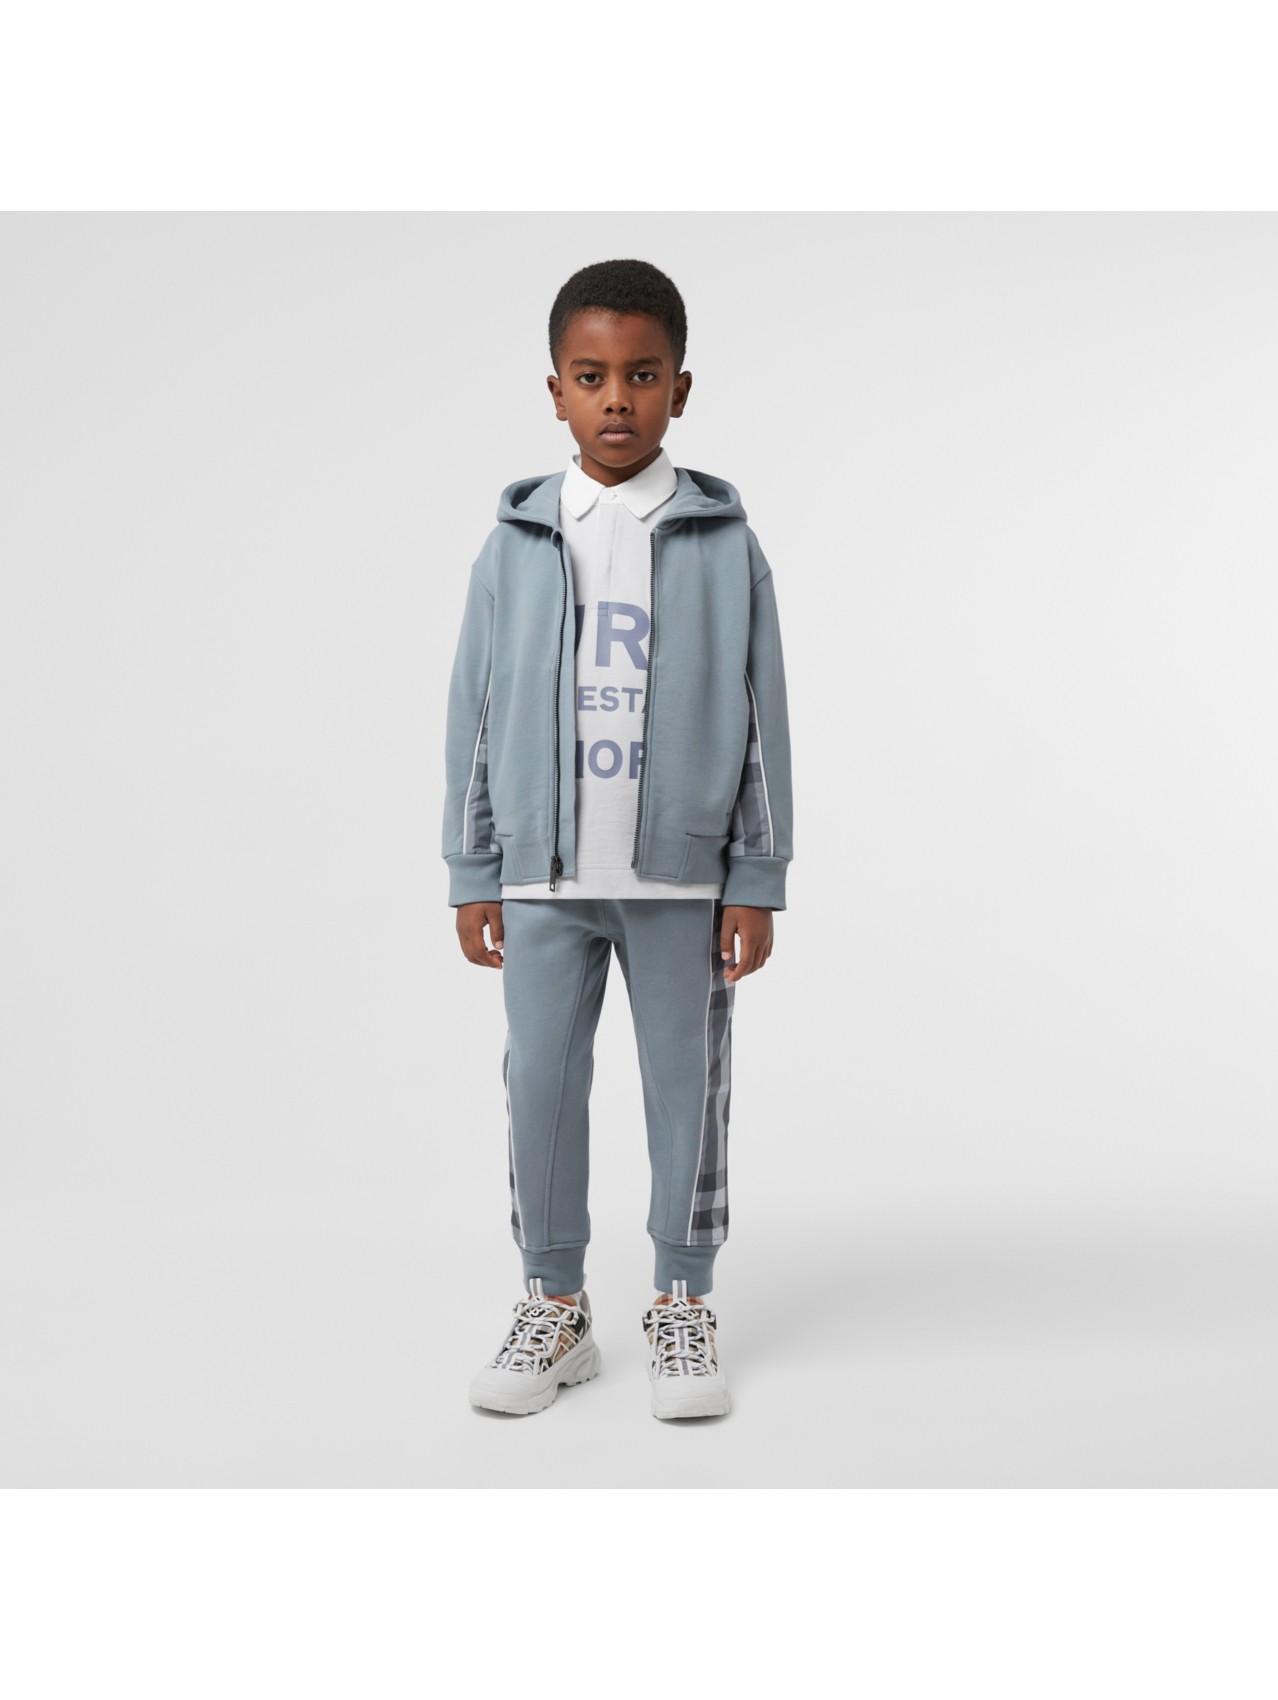 Boys’ Designer Clothing | Burberry Boy | Burberry® Official